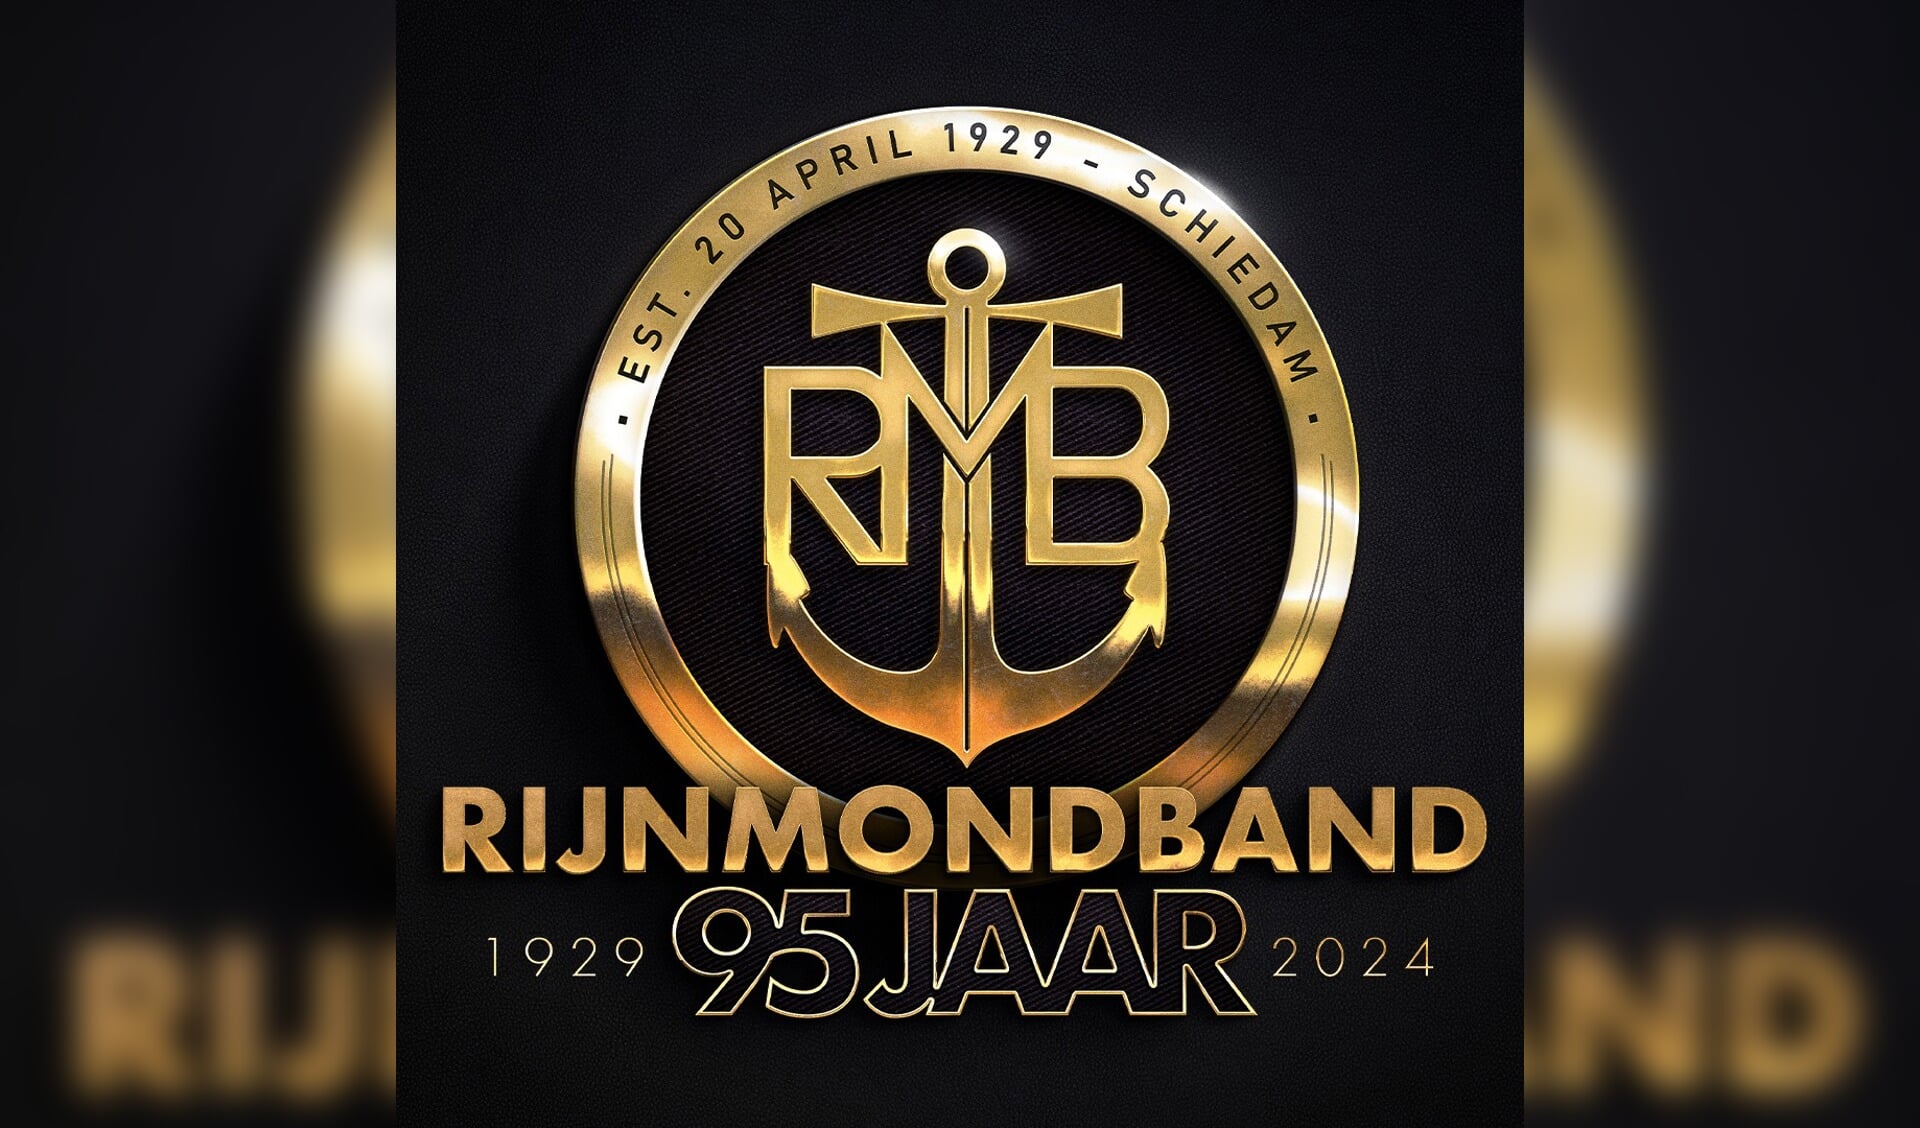 Op 20 april werd de Rijnmondband precies 95 jaar geleden is opgericht. 